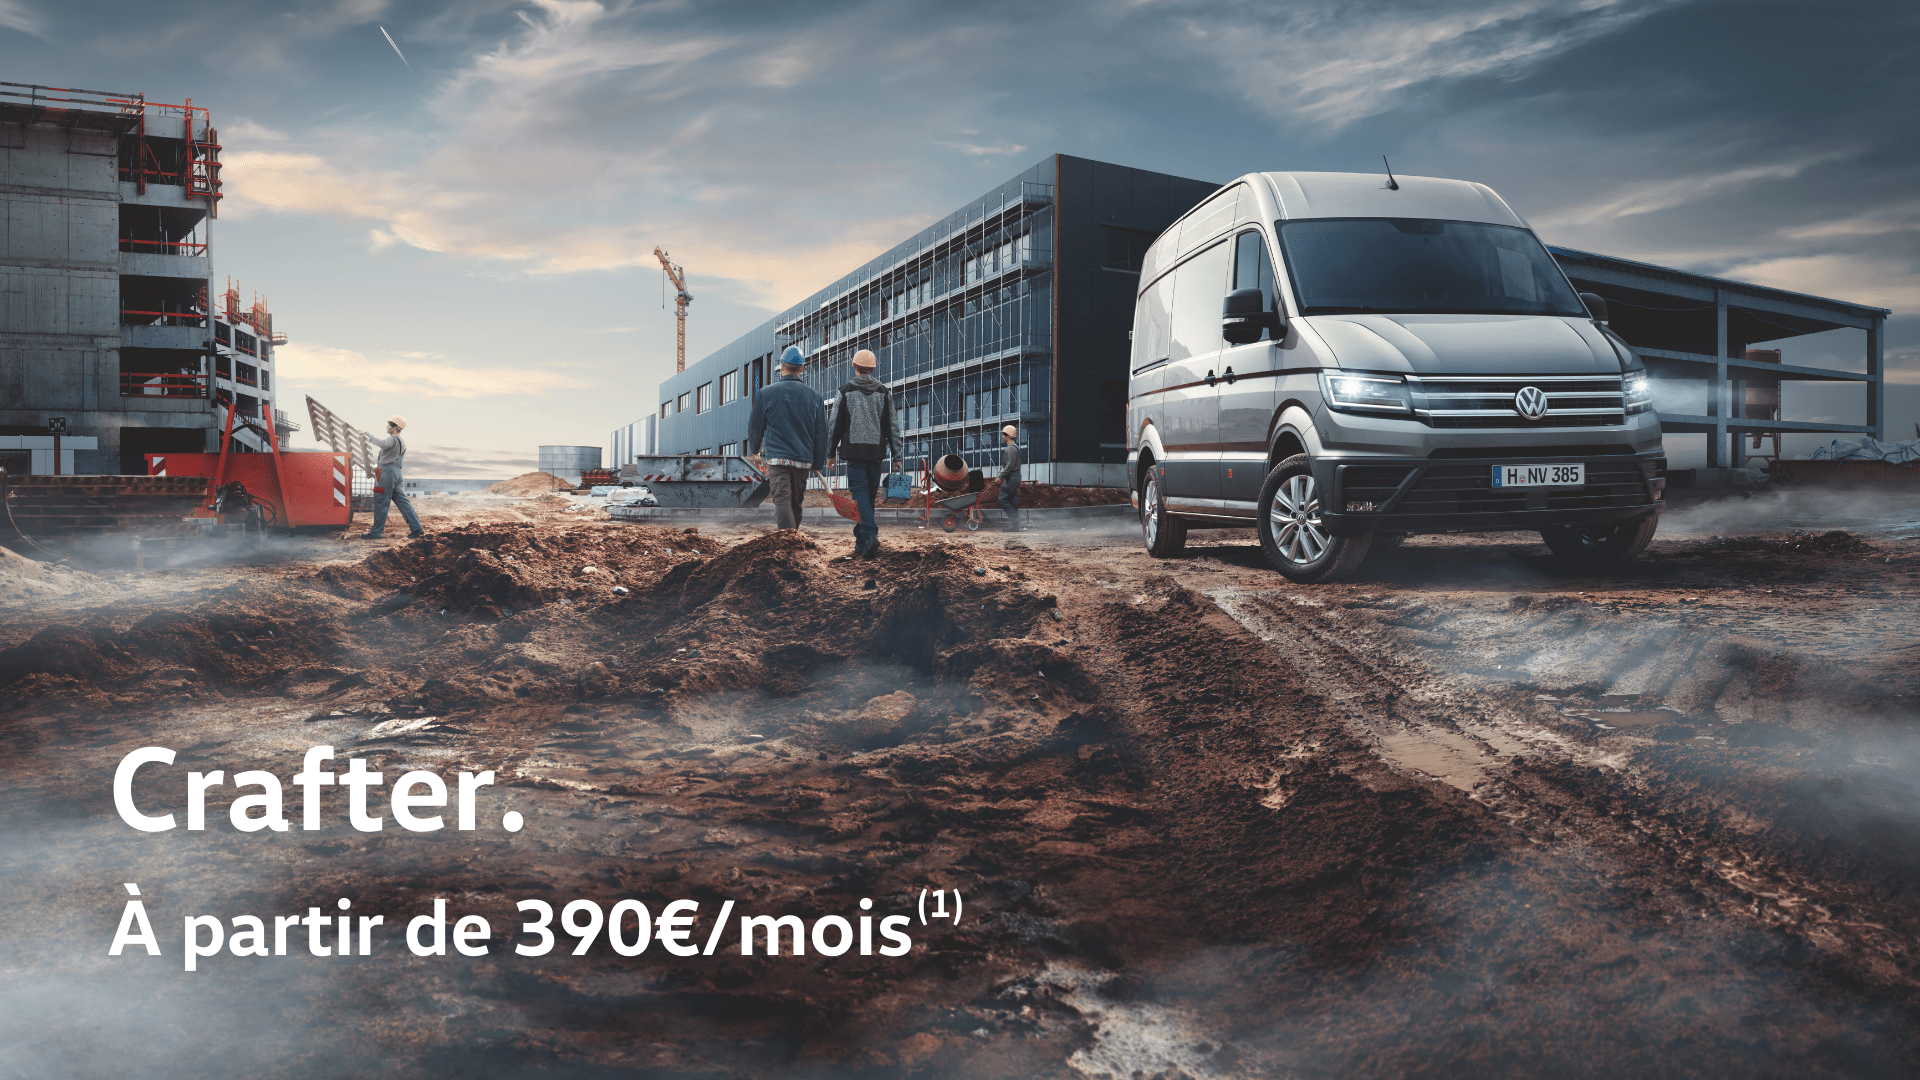 CAR - Volkswagen Utilitaires Nice Est - Profitez d'une offre exceptionnelle sur le Crafter, à partir de 390€/mois(1)